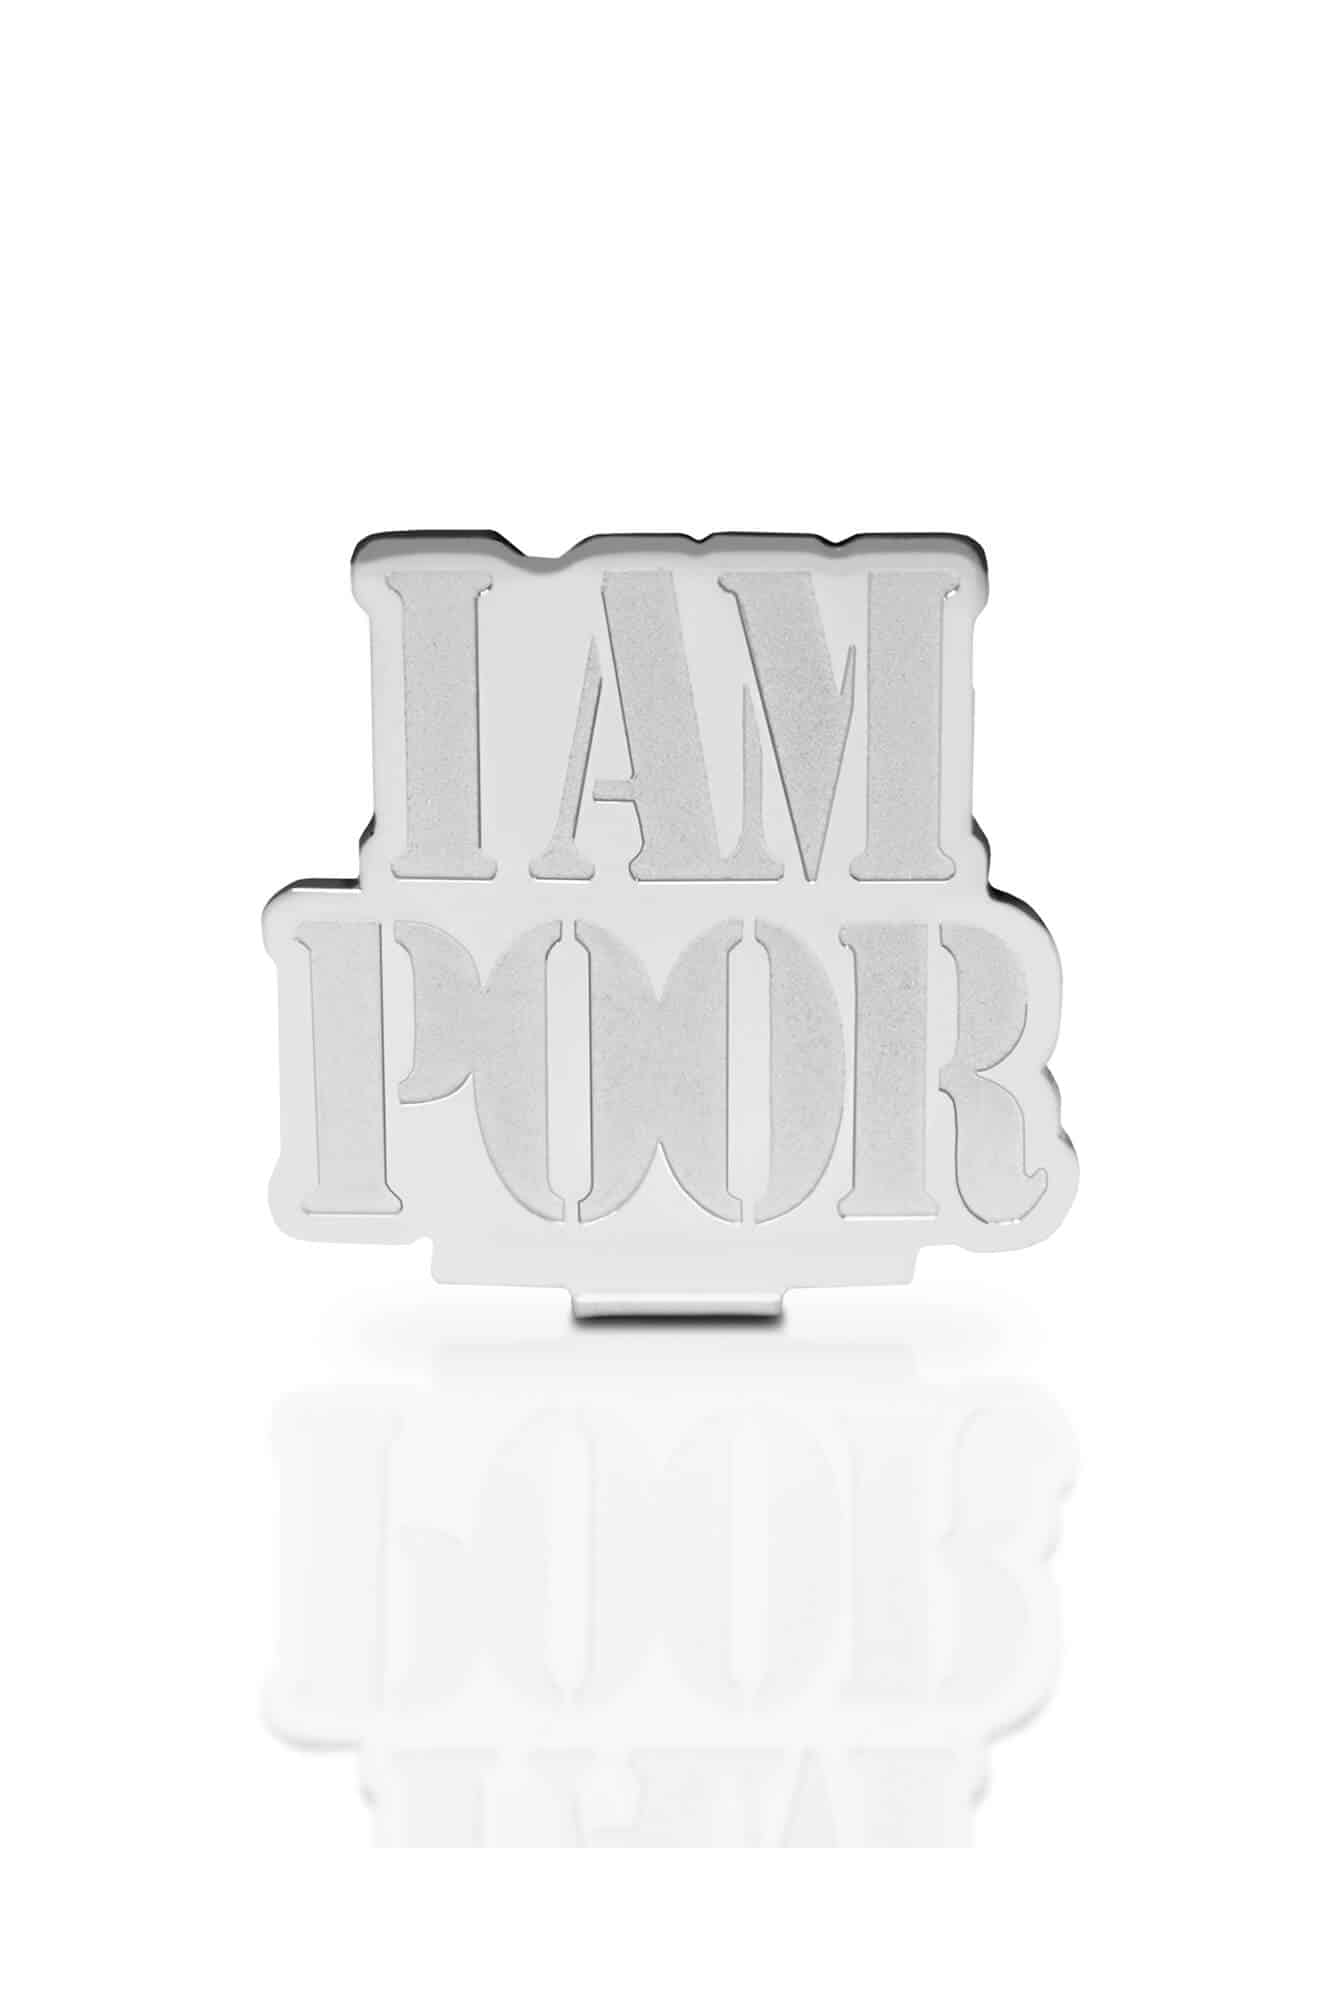 I Am Poor - Money Clip